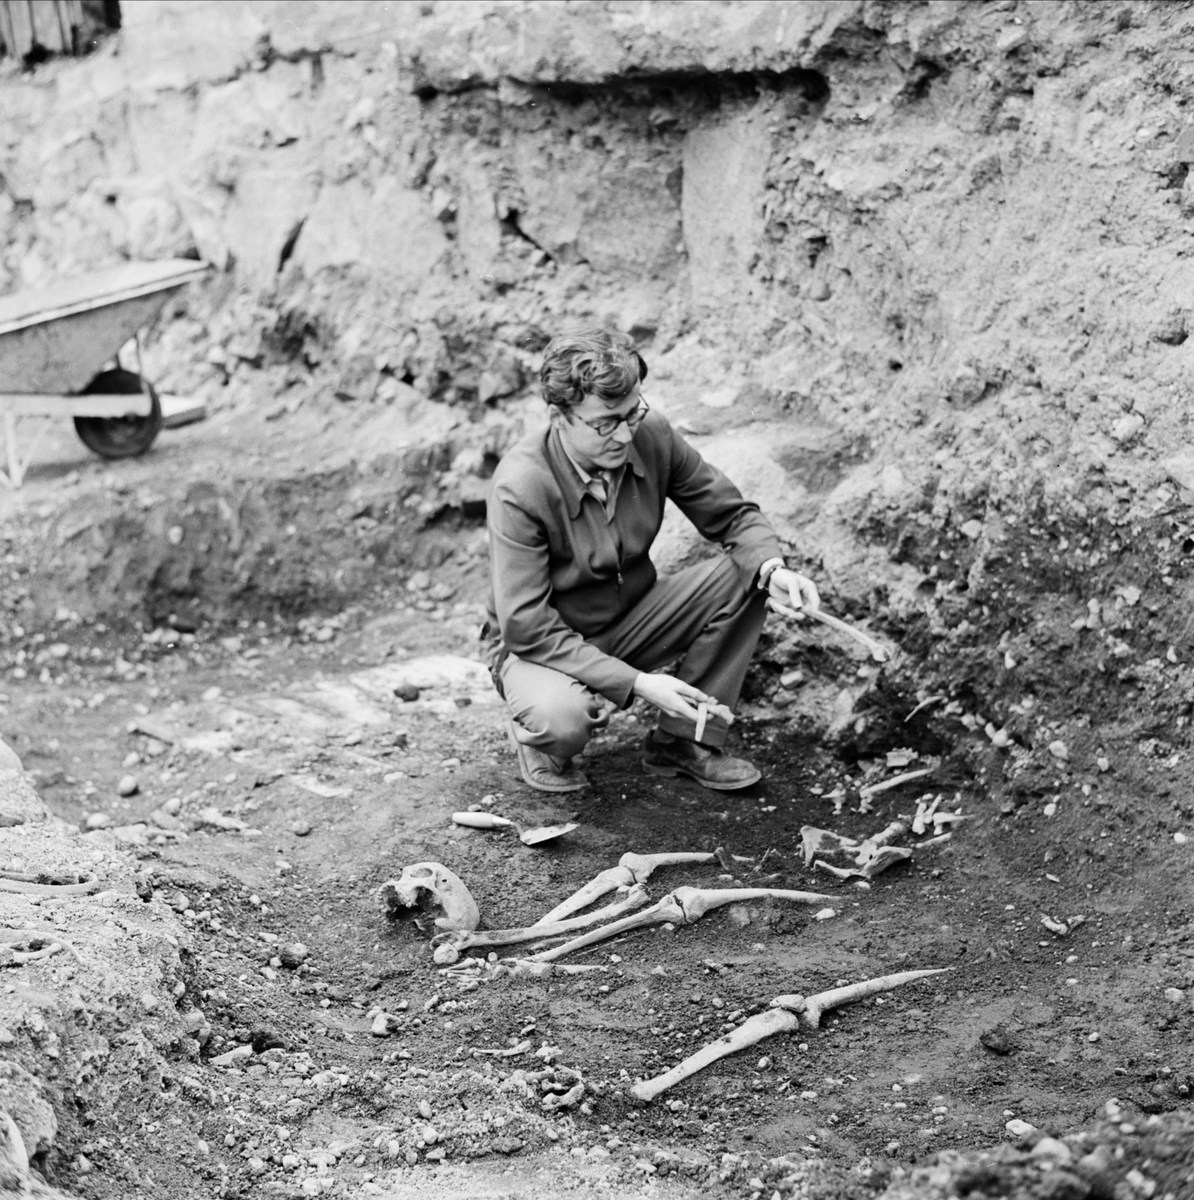 "Fina grävningsfynd bekräftar hypoteser", arkeologisk undersökning, sannolikt i Uppsala,1962